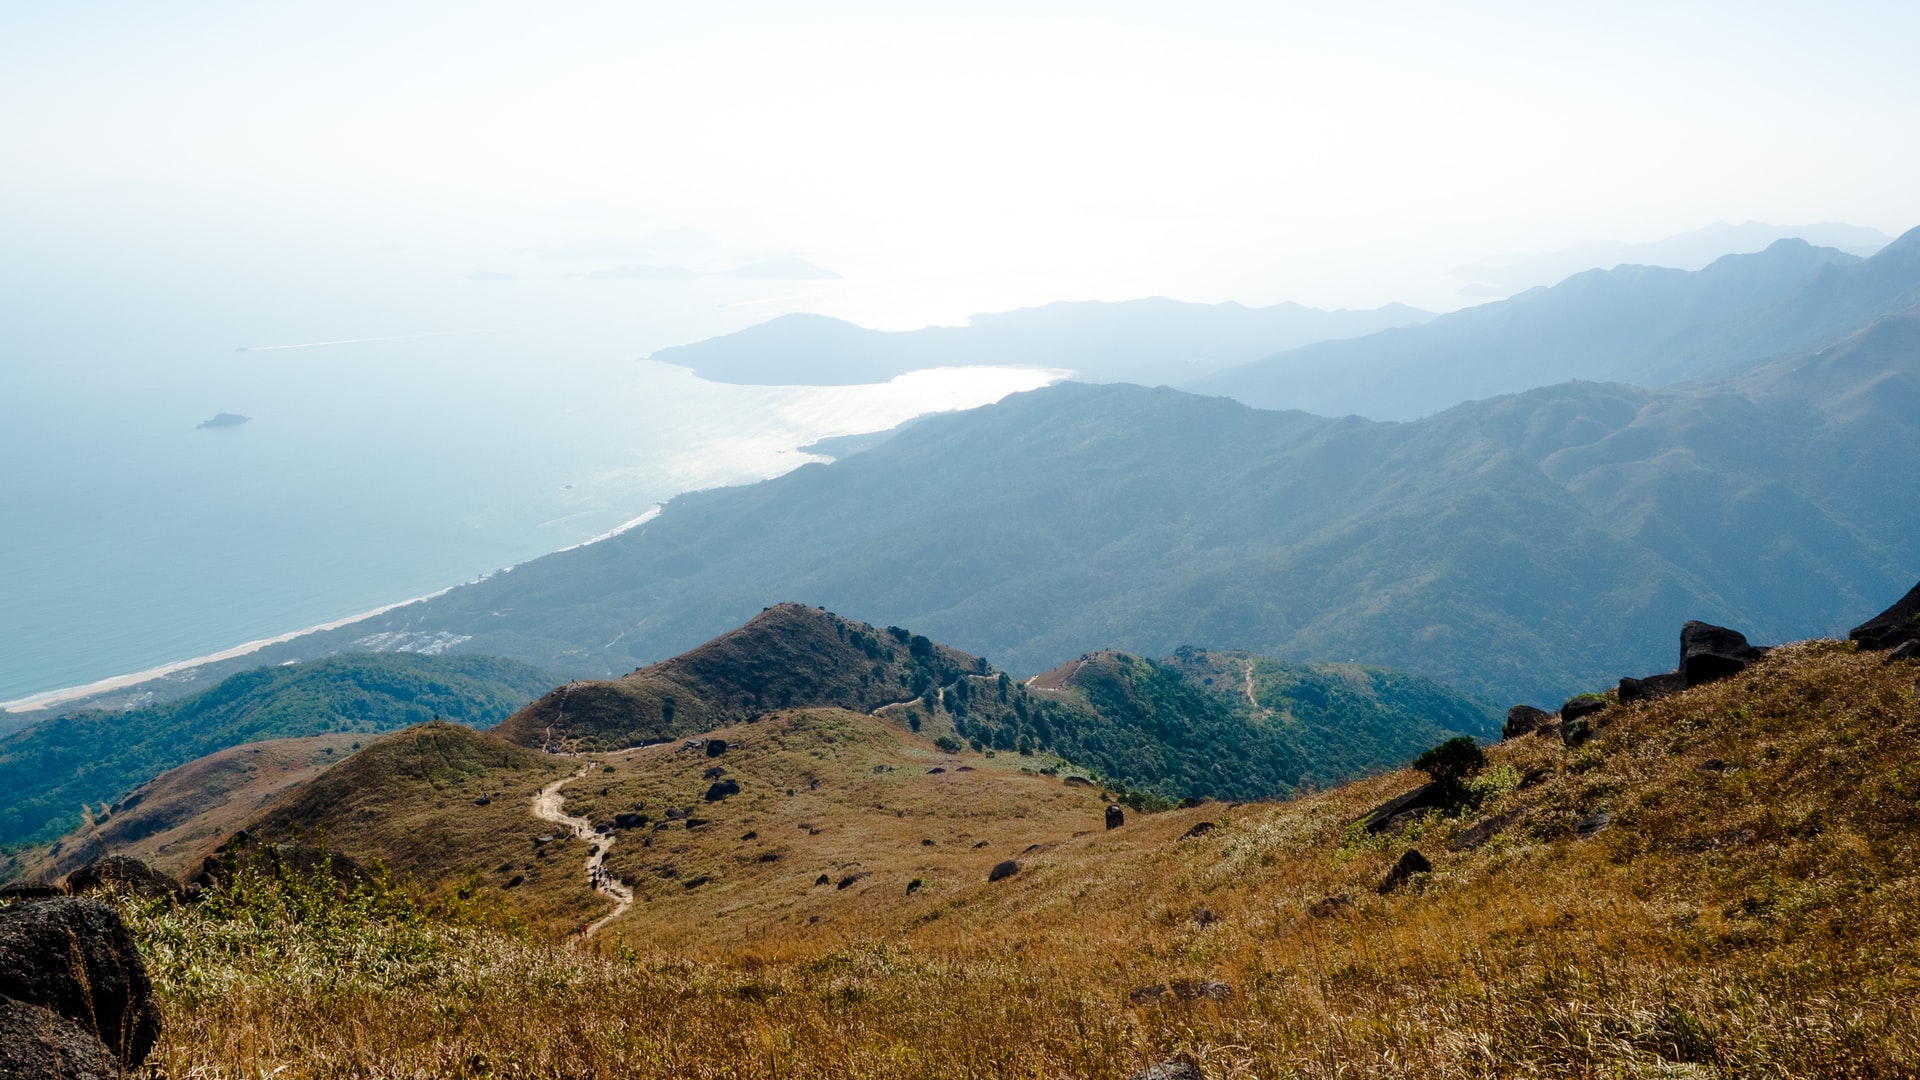 tung o ancient trail views on Lantau Island